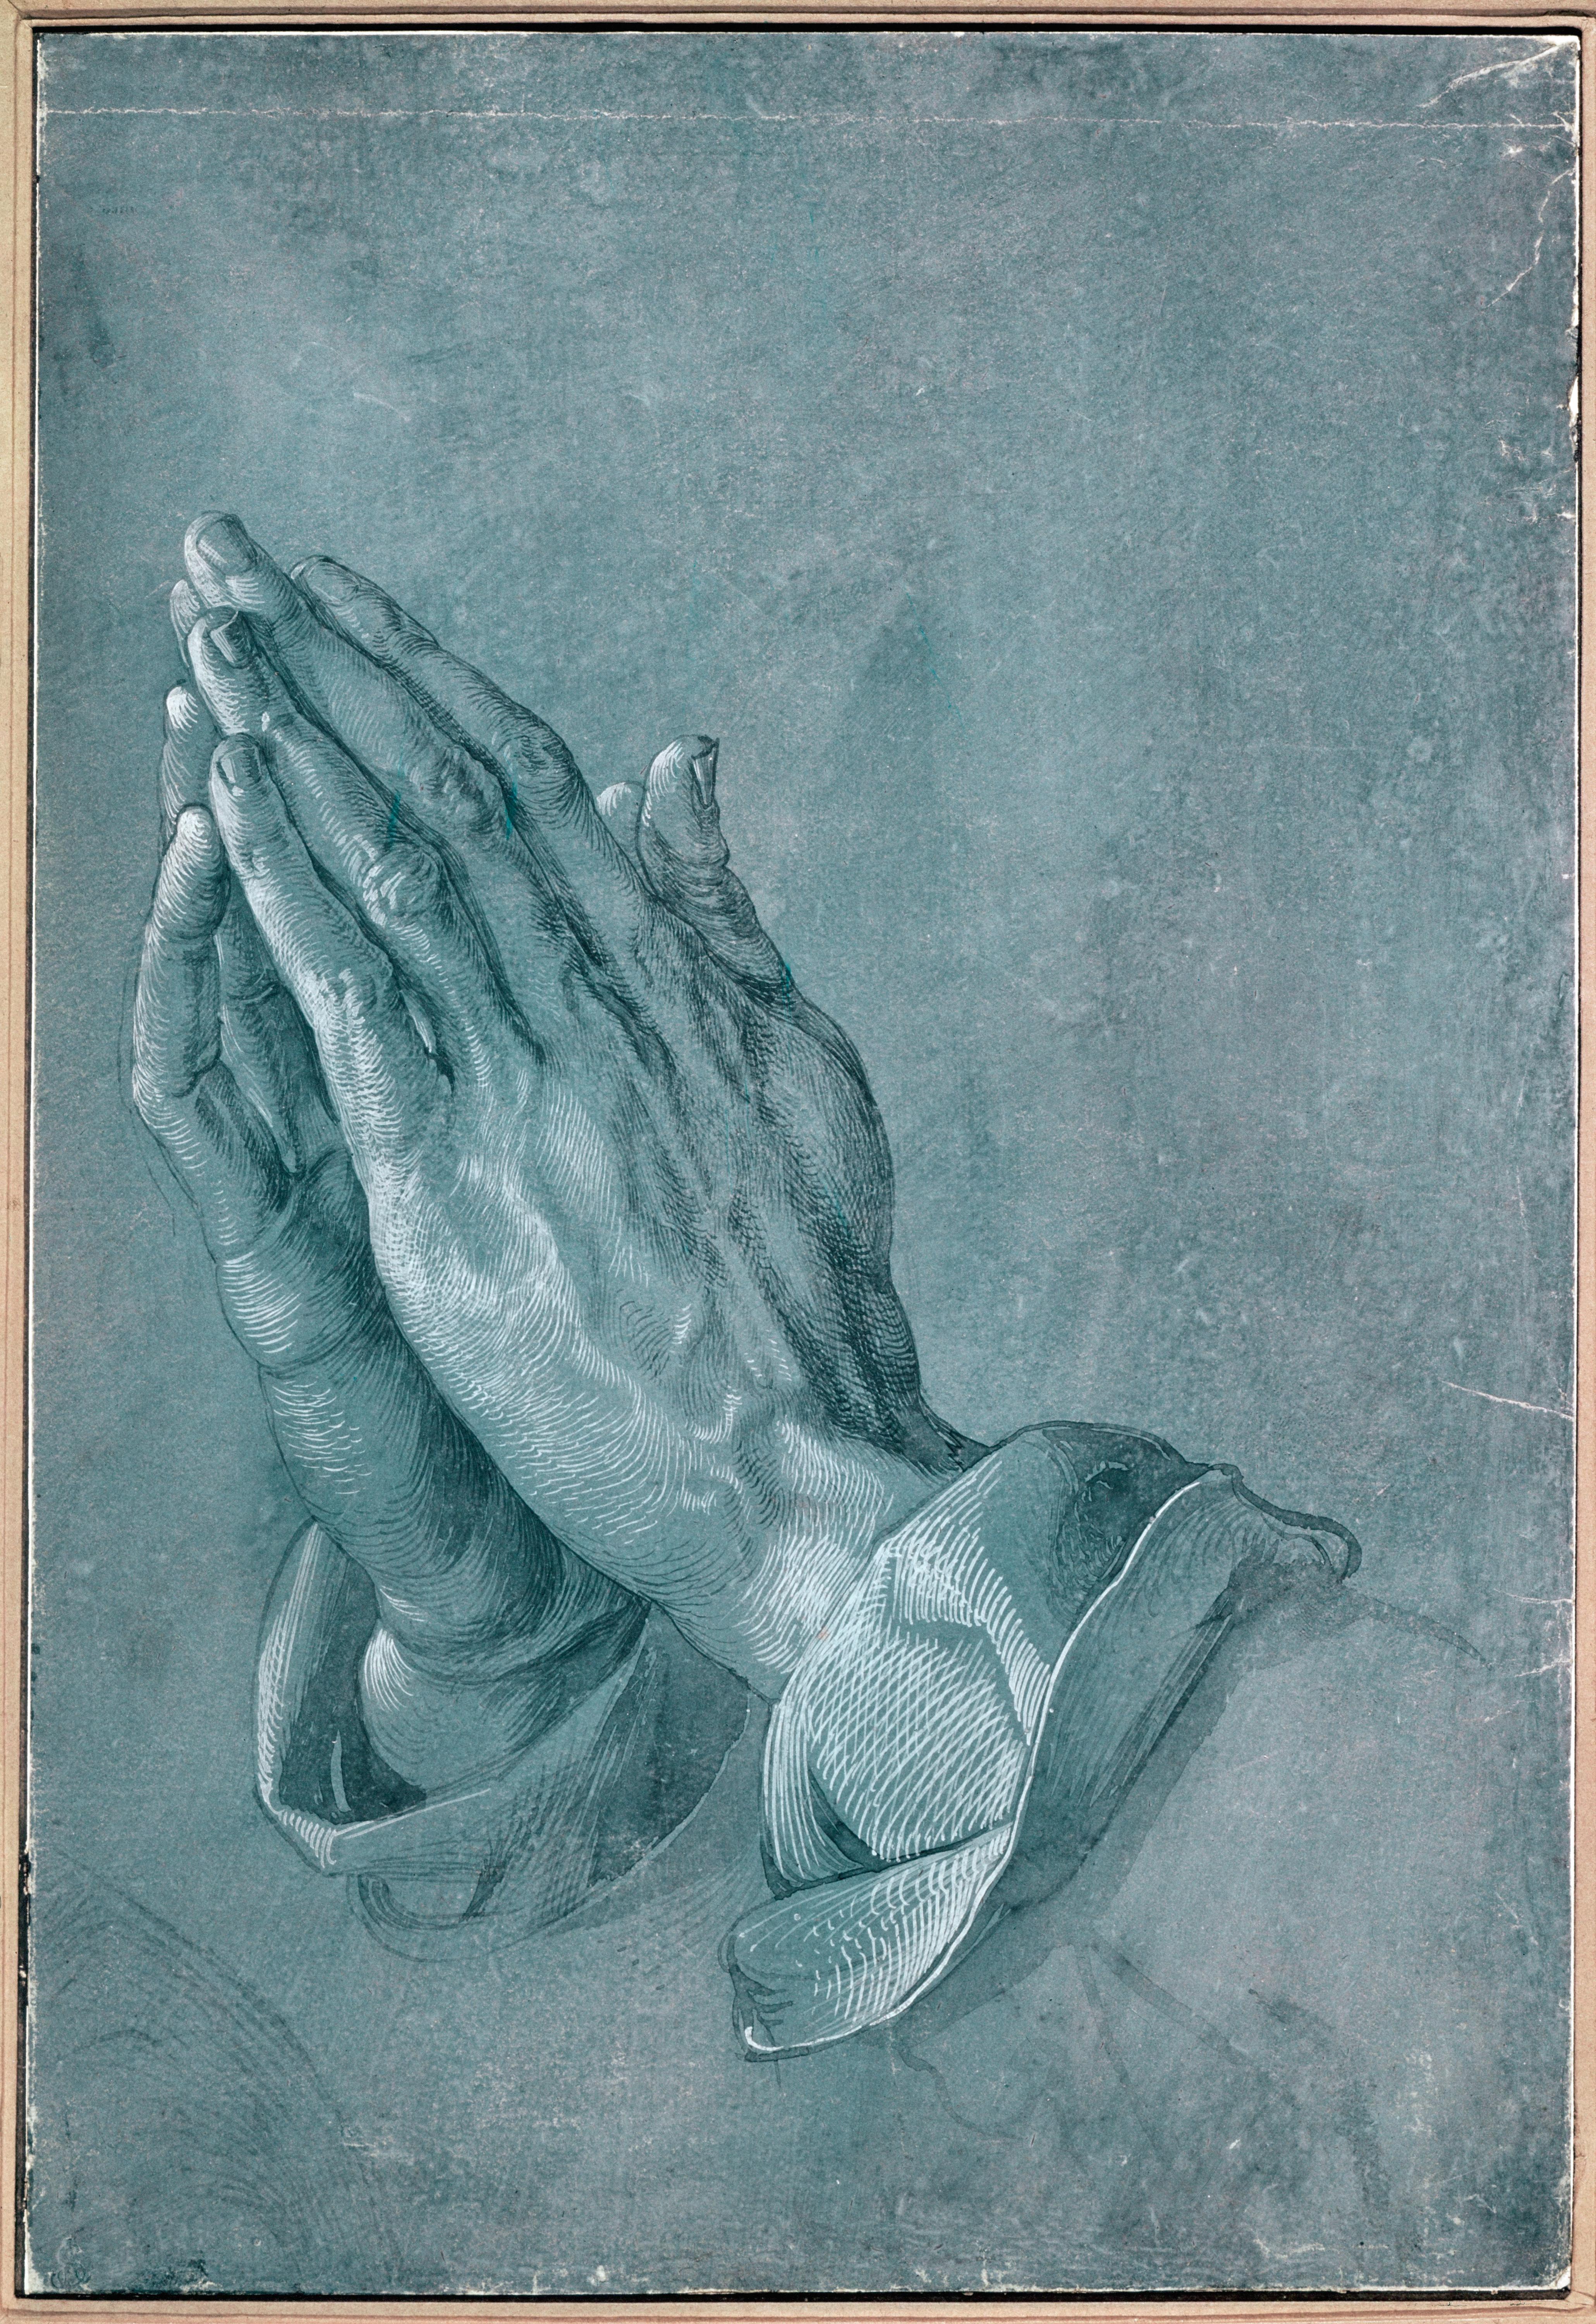 palm, hands, praying, Albrecht Durer - desktop wallpaper